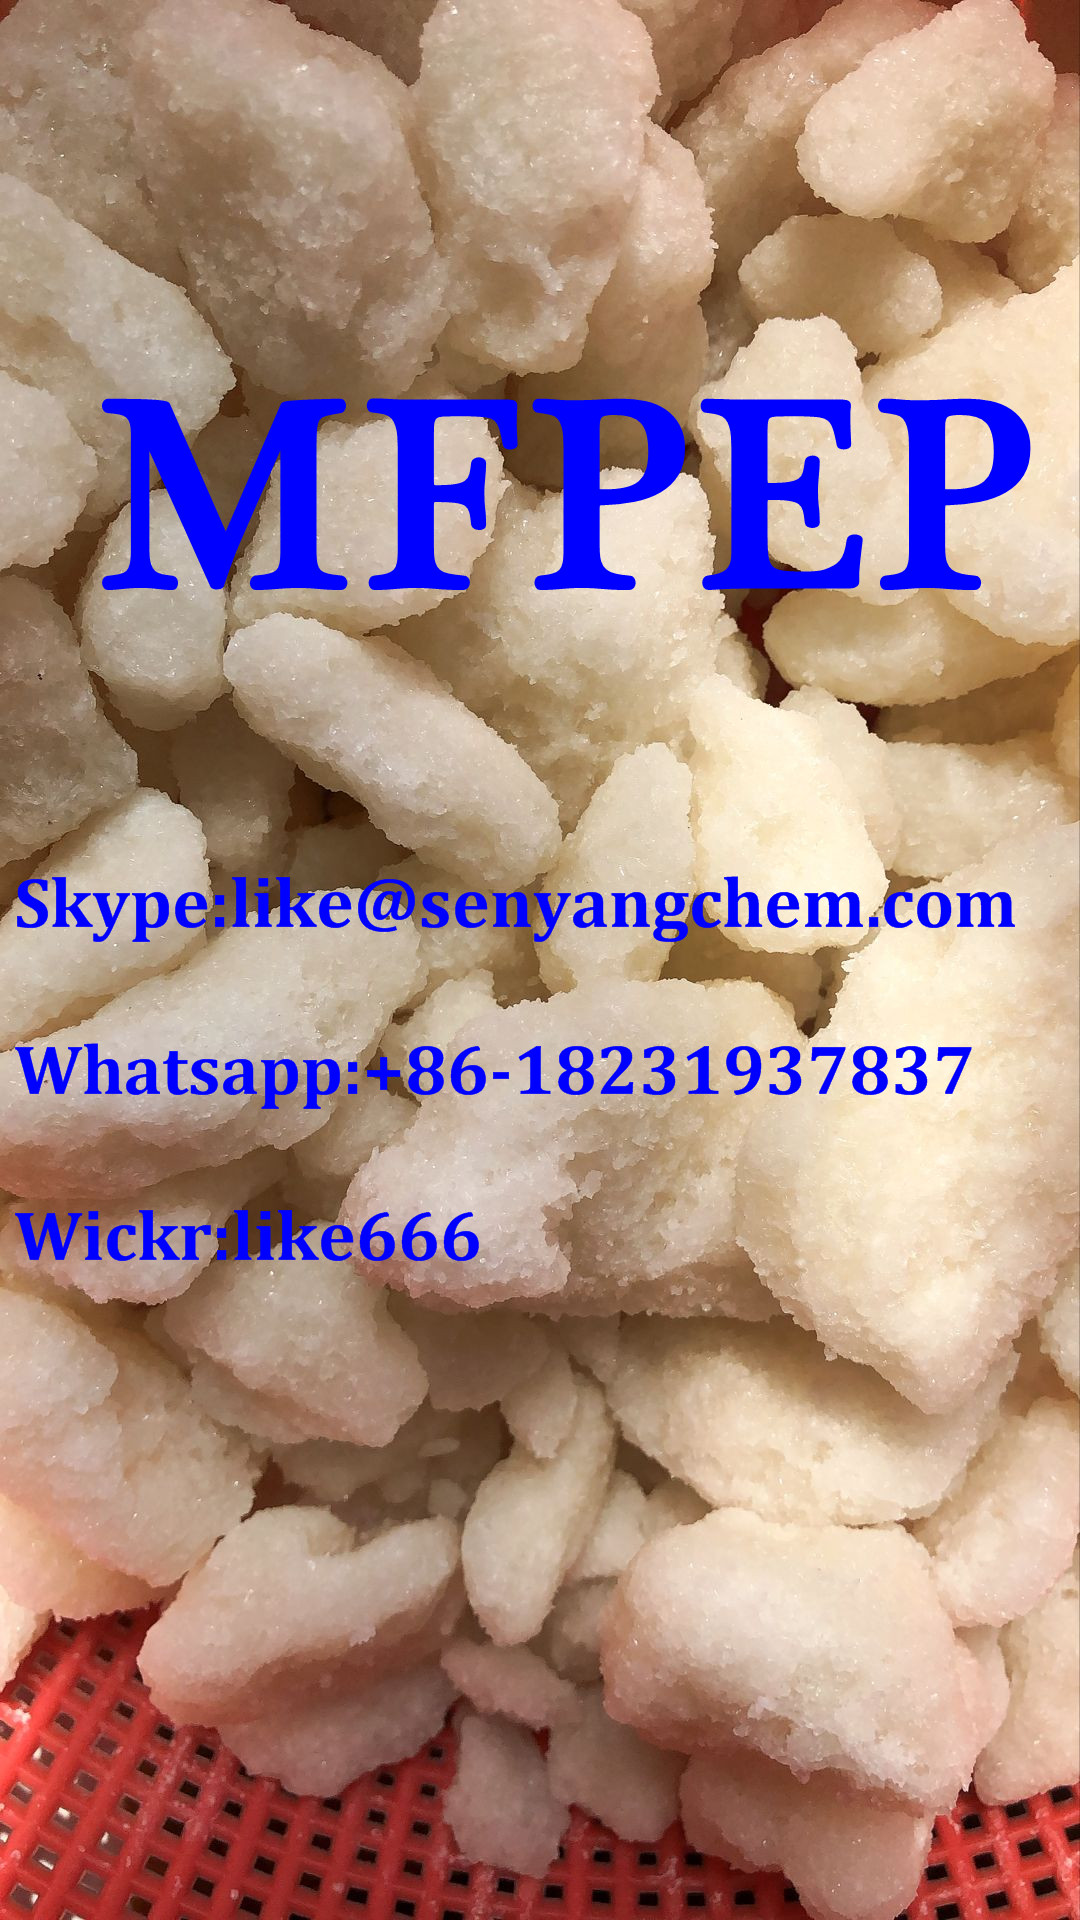 Supply MFPEP Whatsapp:+86-18231937837